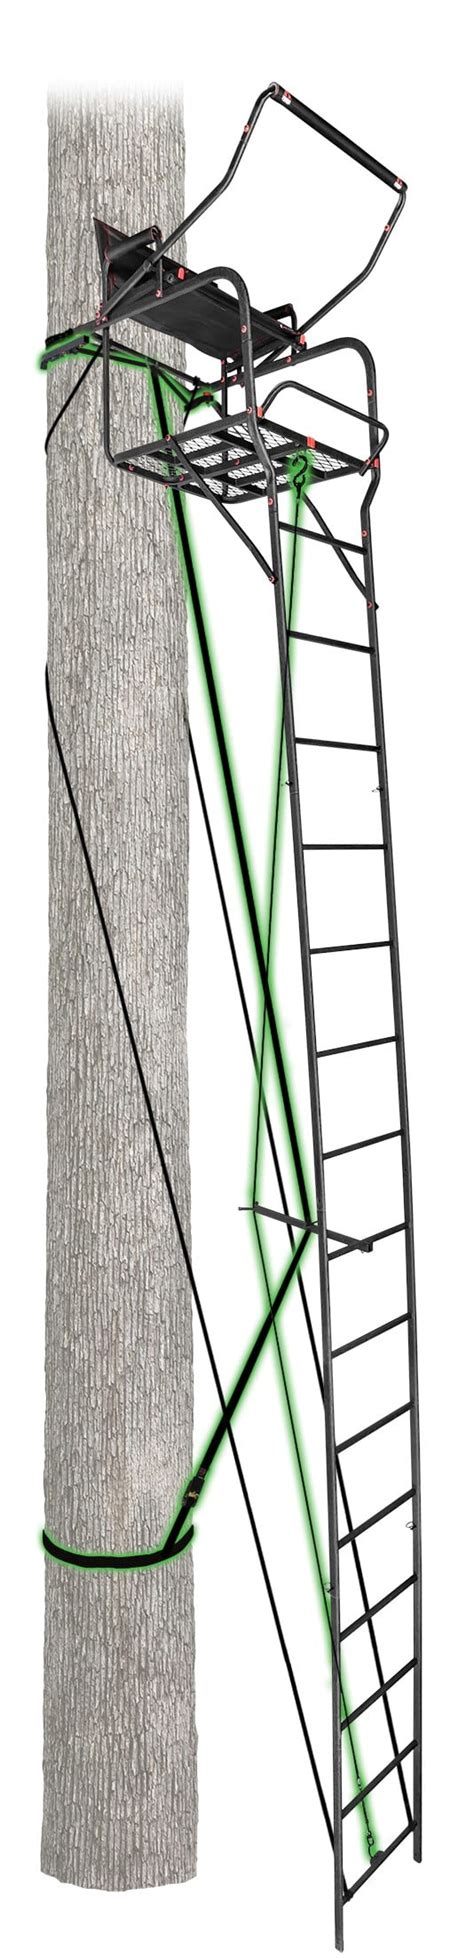 22 Mac Daddy Xtra Wide Ladderstand Primal Treestand Standish